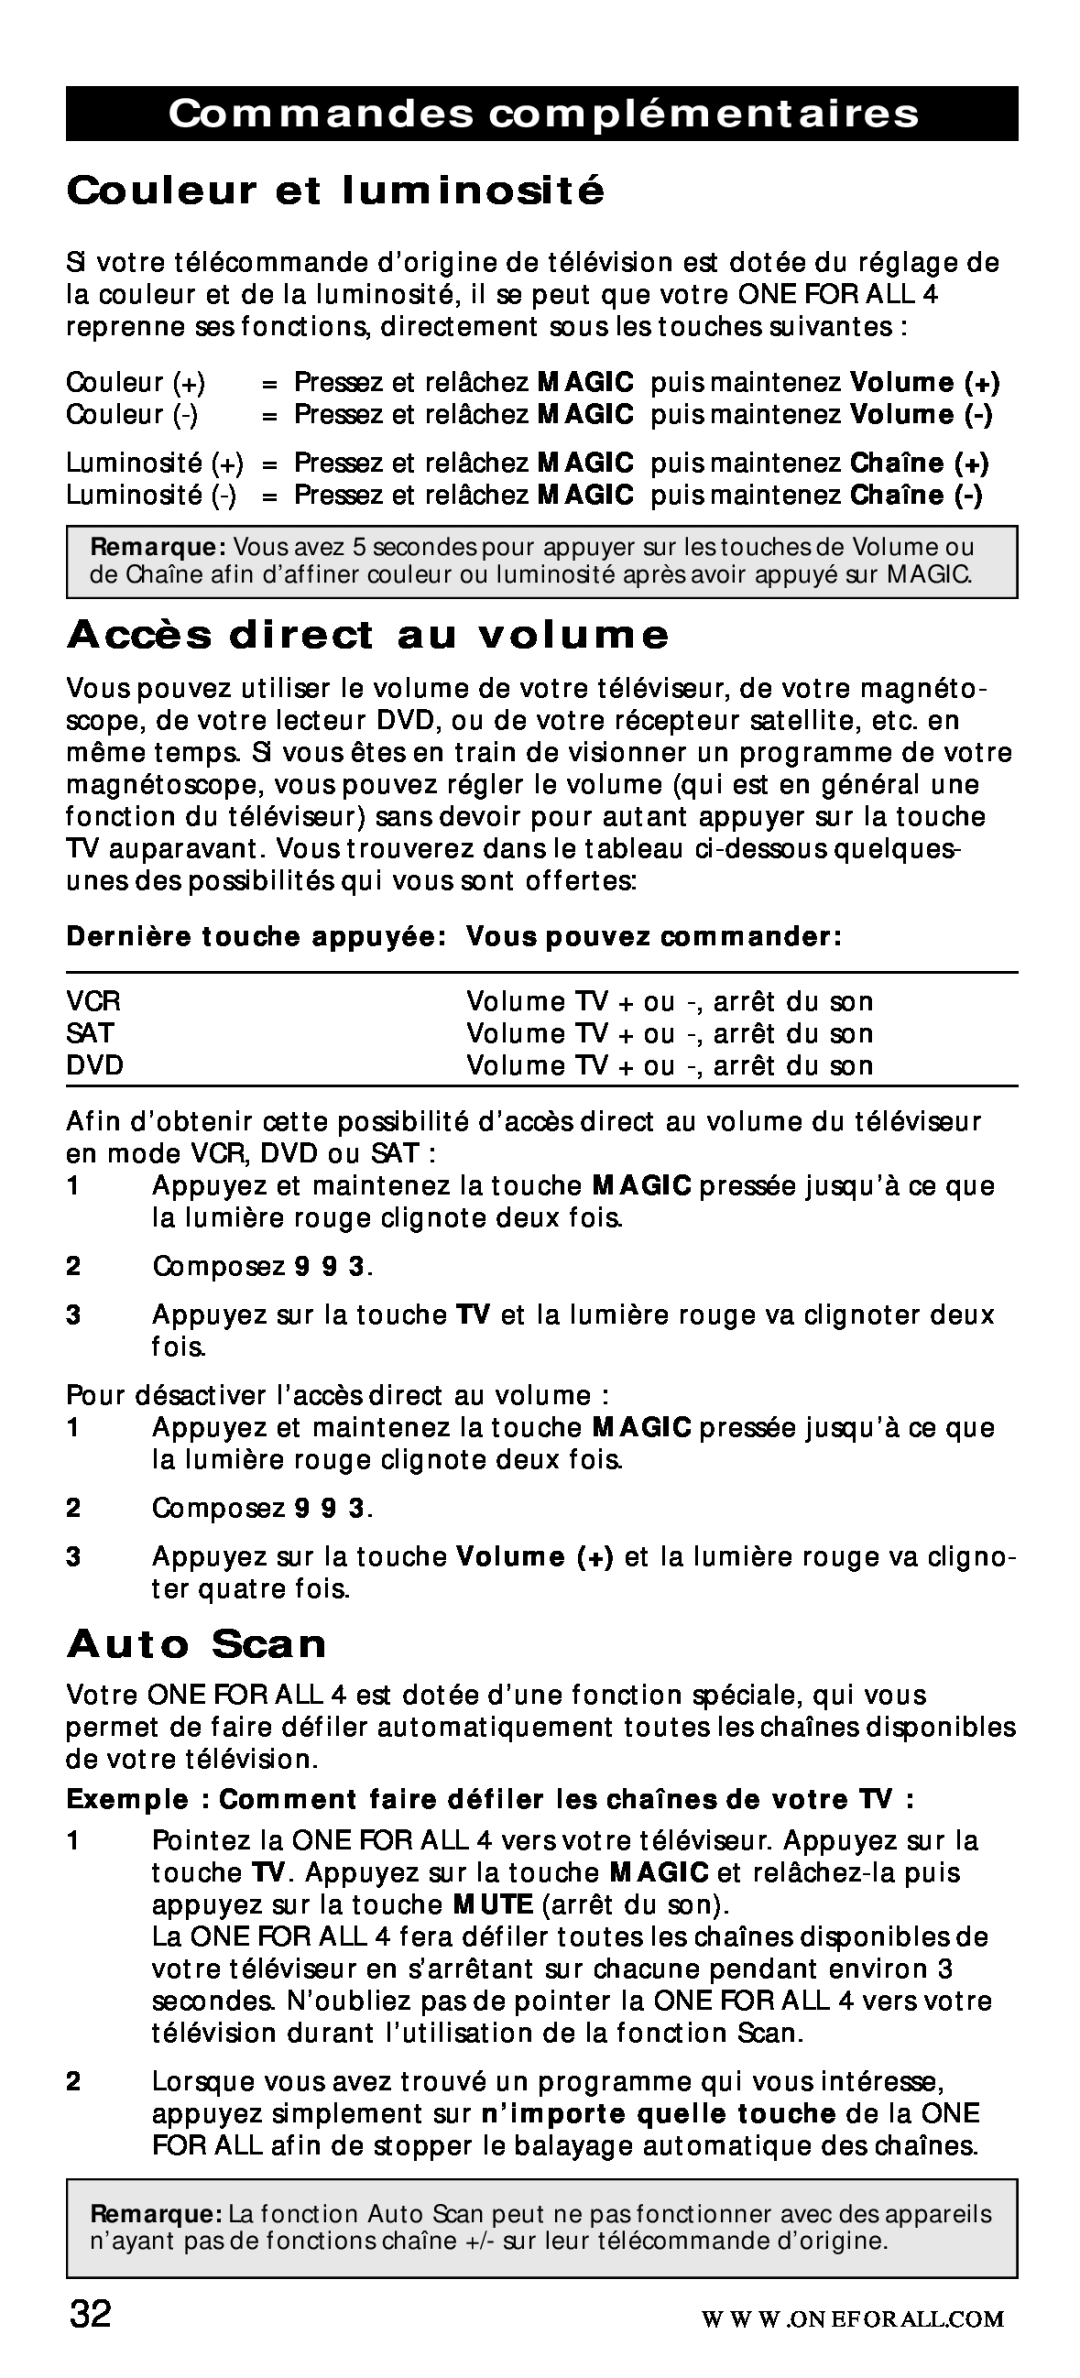 One for All URC-7040 manual Commandes complémentaires, Couleur et luminosité, Accès direct au volume, Auto Scan 